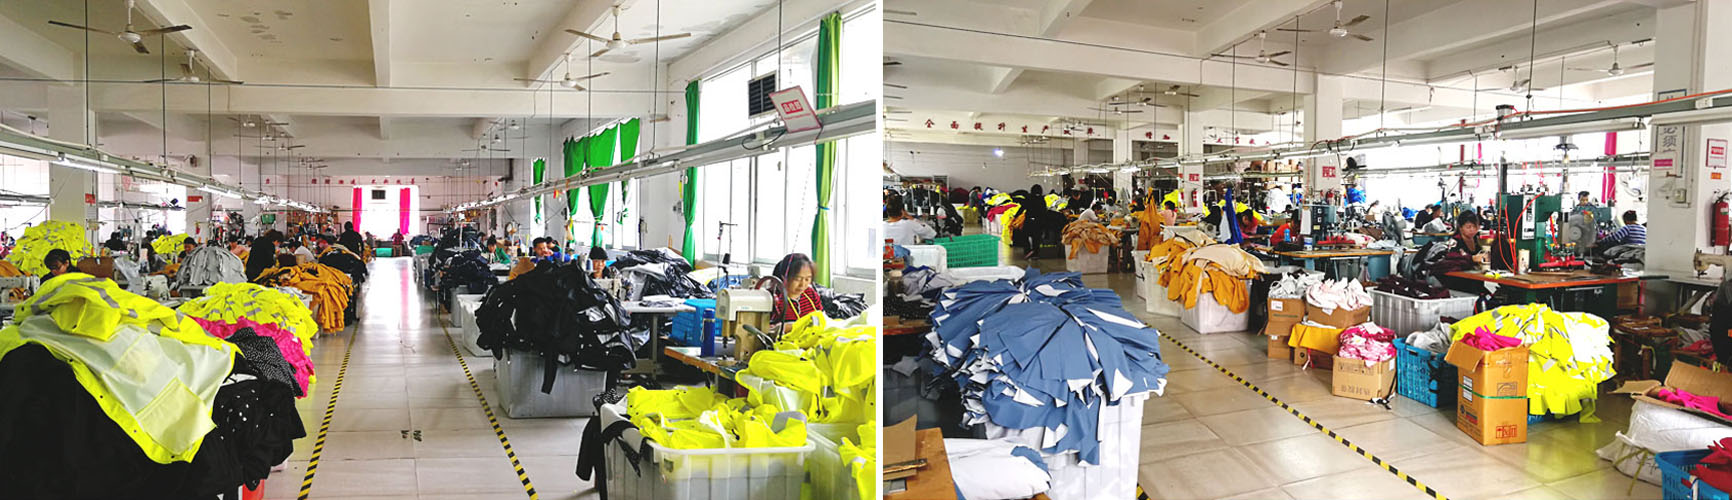 Phân xưởng sản xuất áo mưa với công nghệ sản xuất áo mưa tiện lợi hiện đại sẵn sàng sản hỗ trợ bạn.